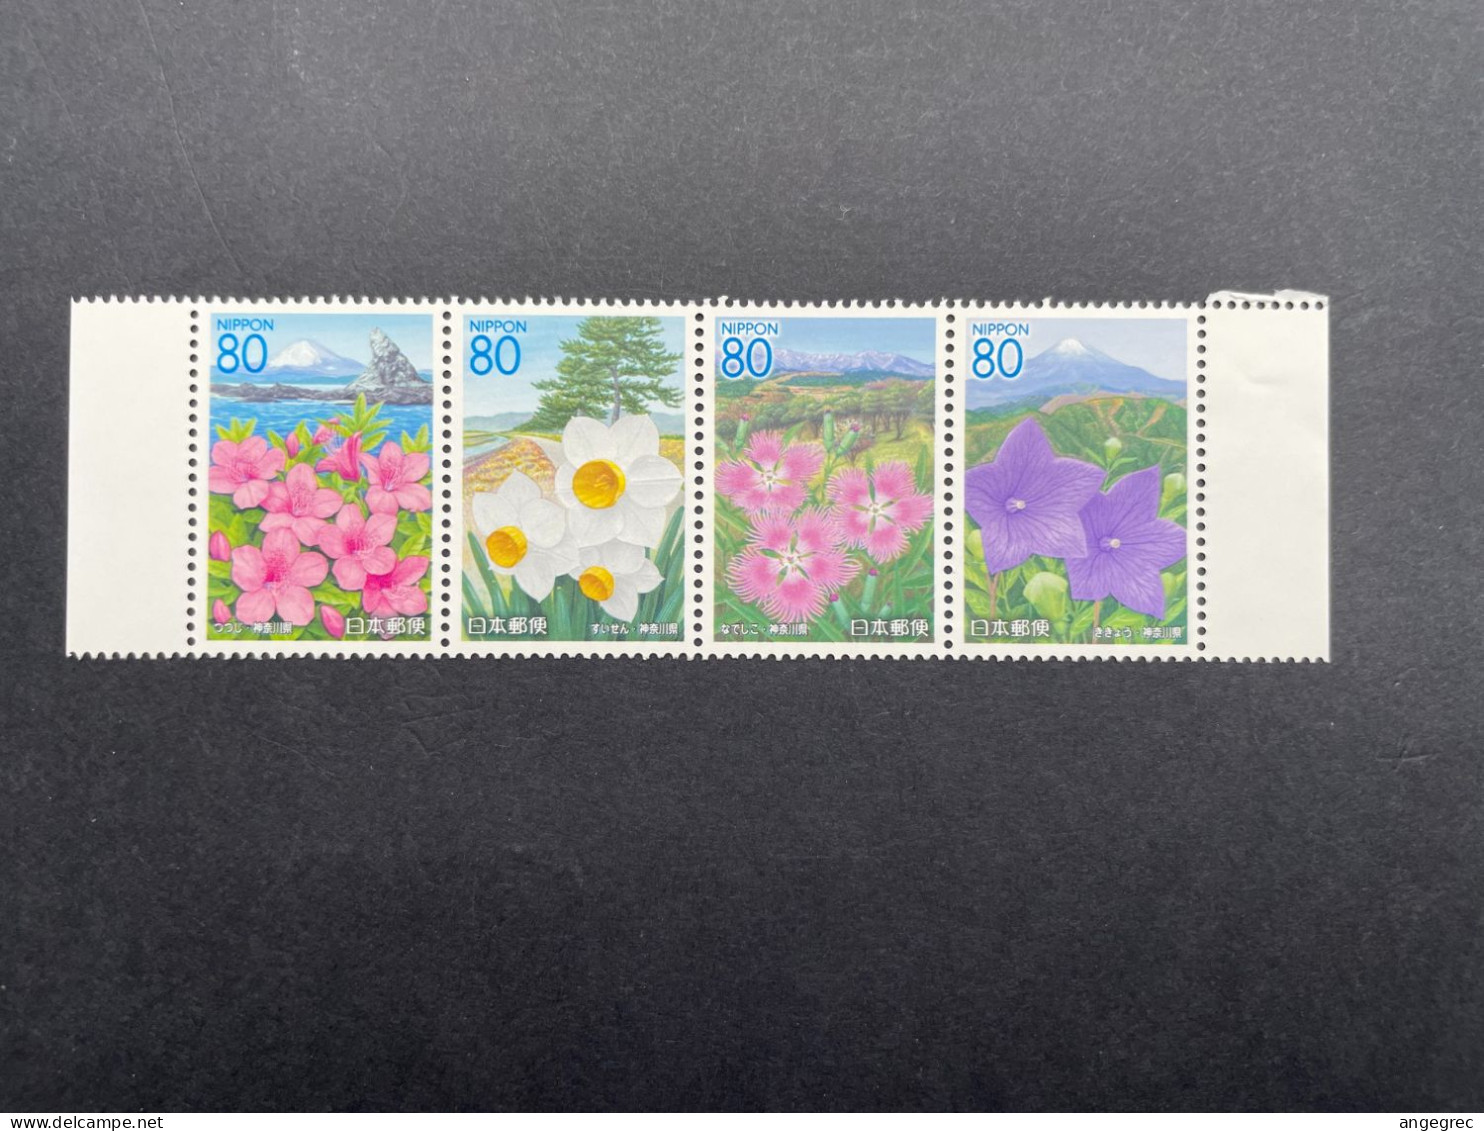 Timbre Japon 2005 Bande De Timbre/stamp Strip Fleur Flower N°3893 à 3896 Neuf ** - Collections, Lots & Series